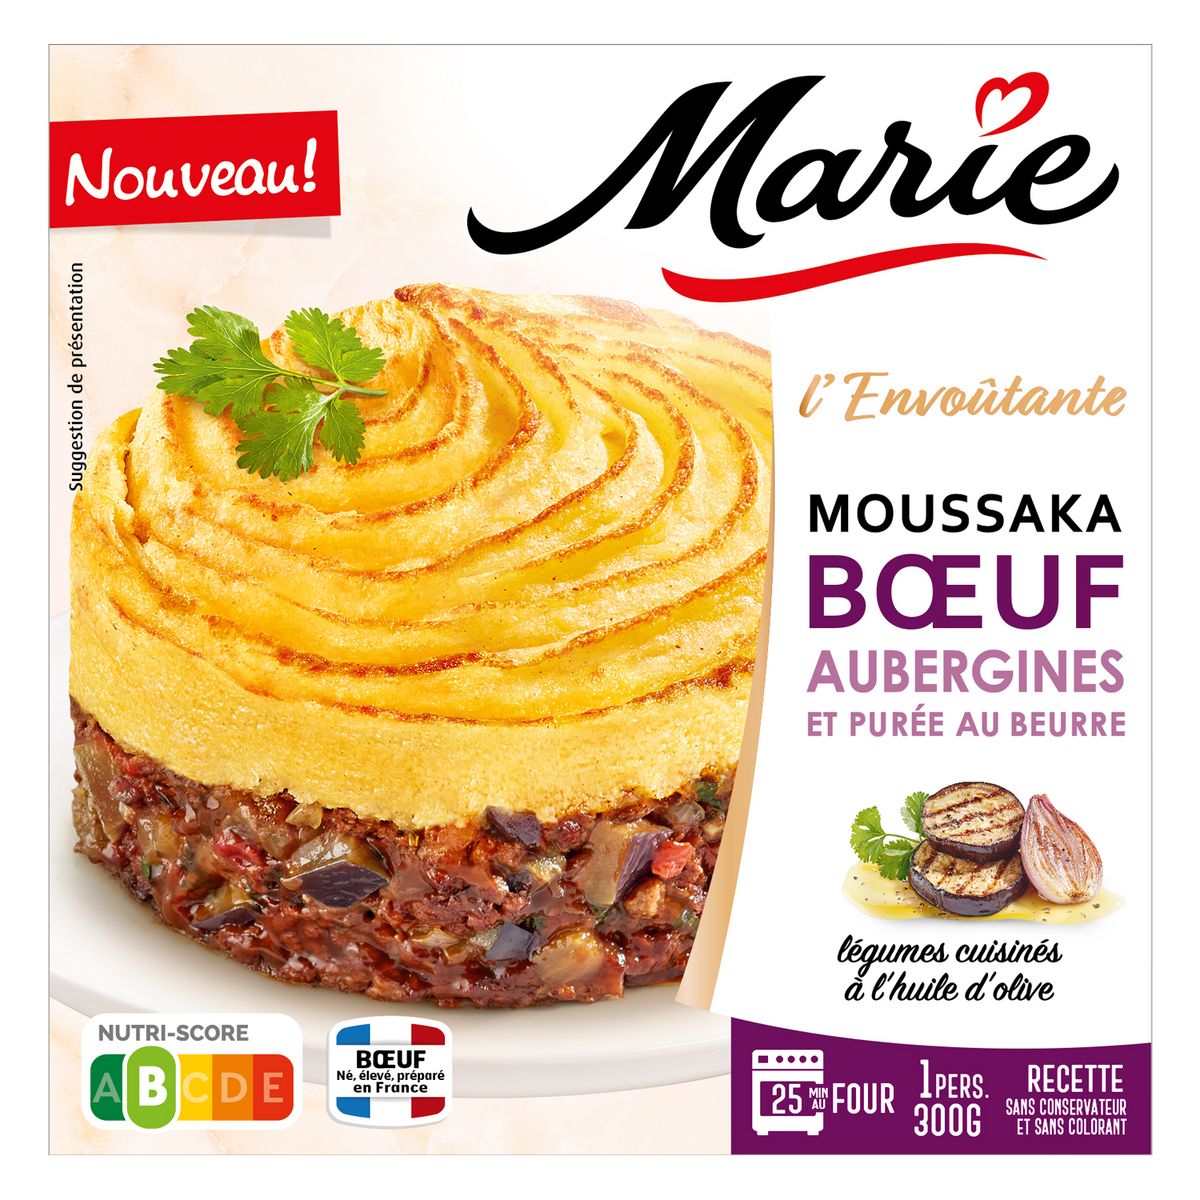 MARIE Moussaka boeuf aubergines et purée au beurre 1 portion 300g